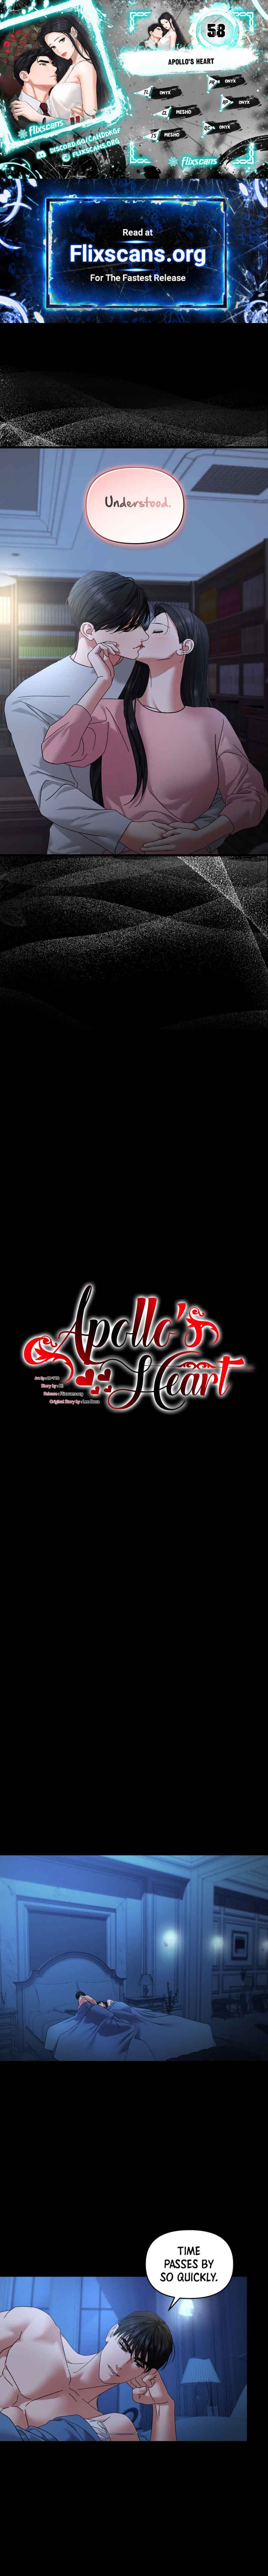 Apollo’S Heart - Page 2